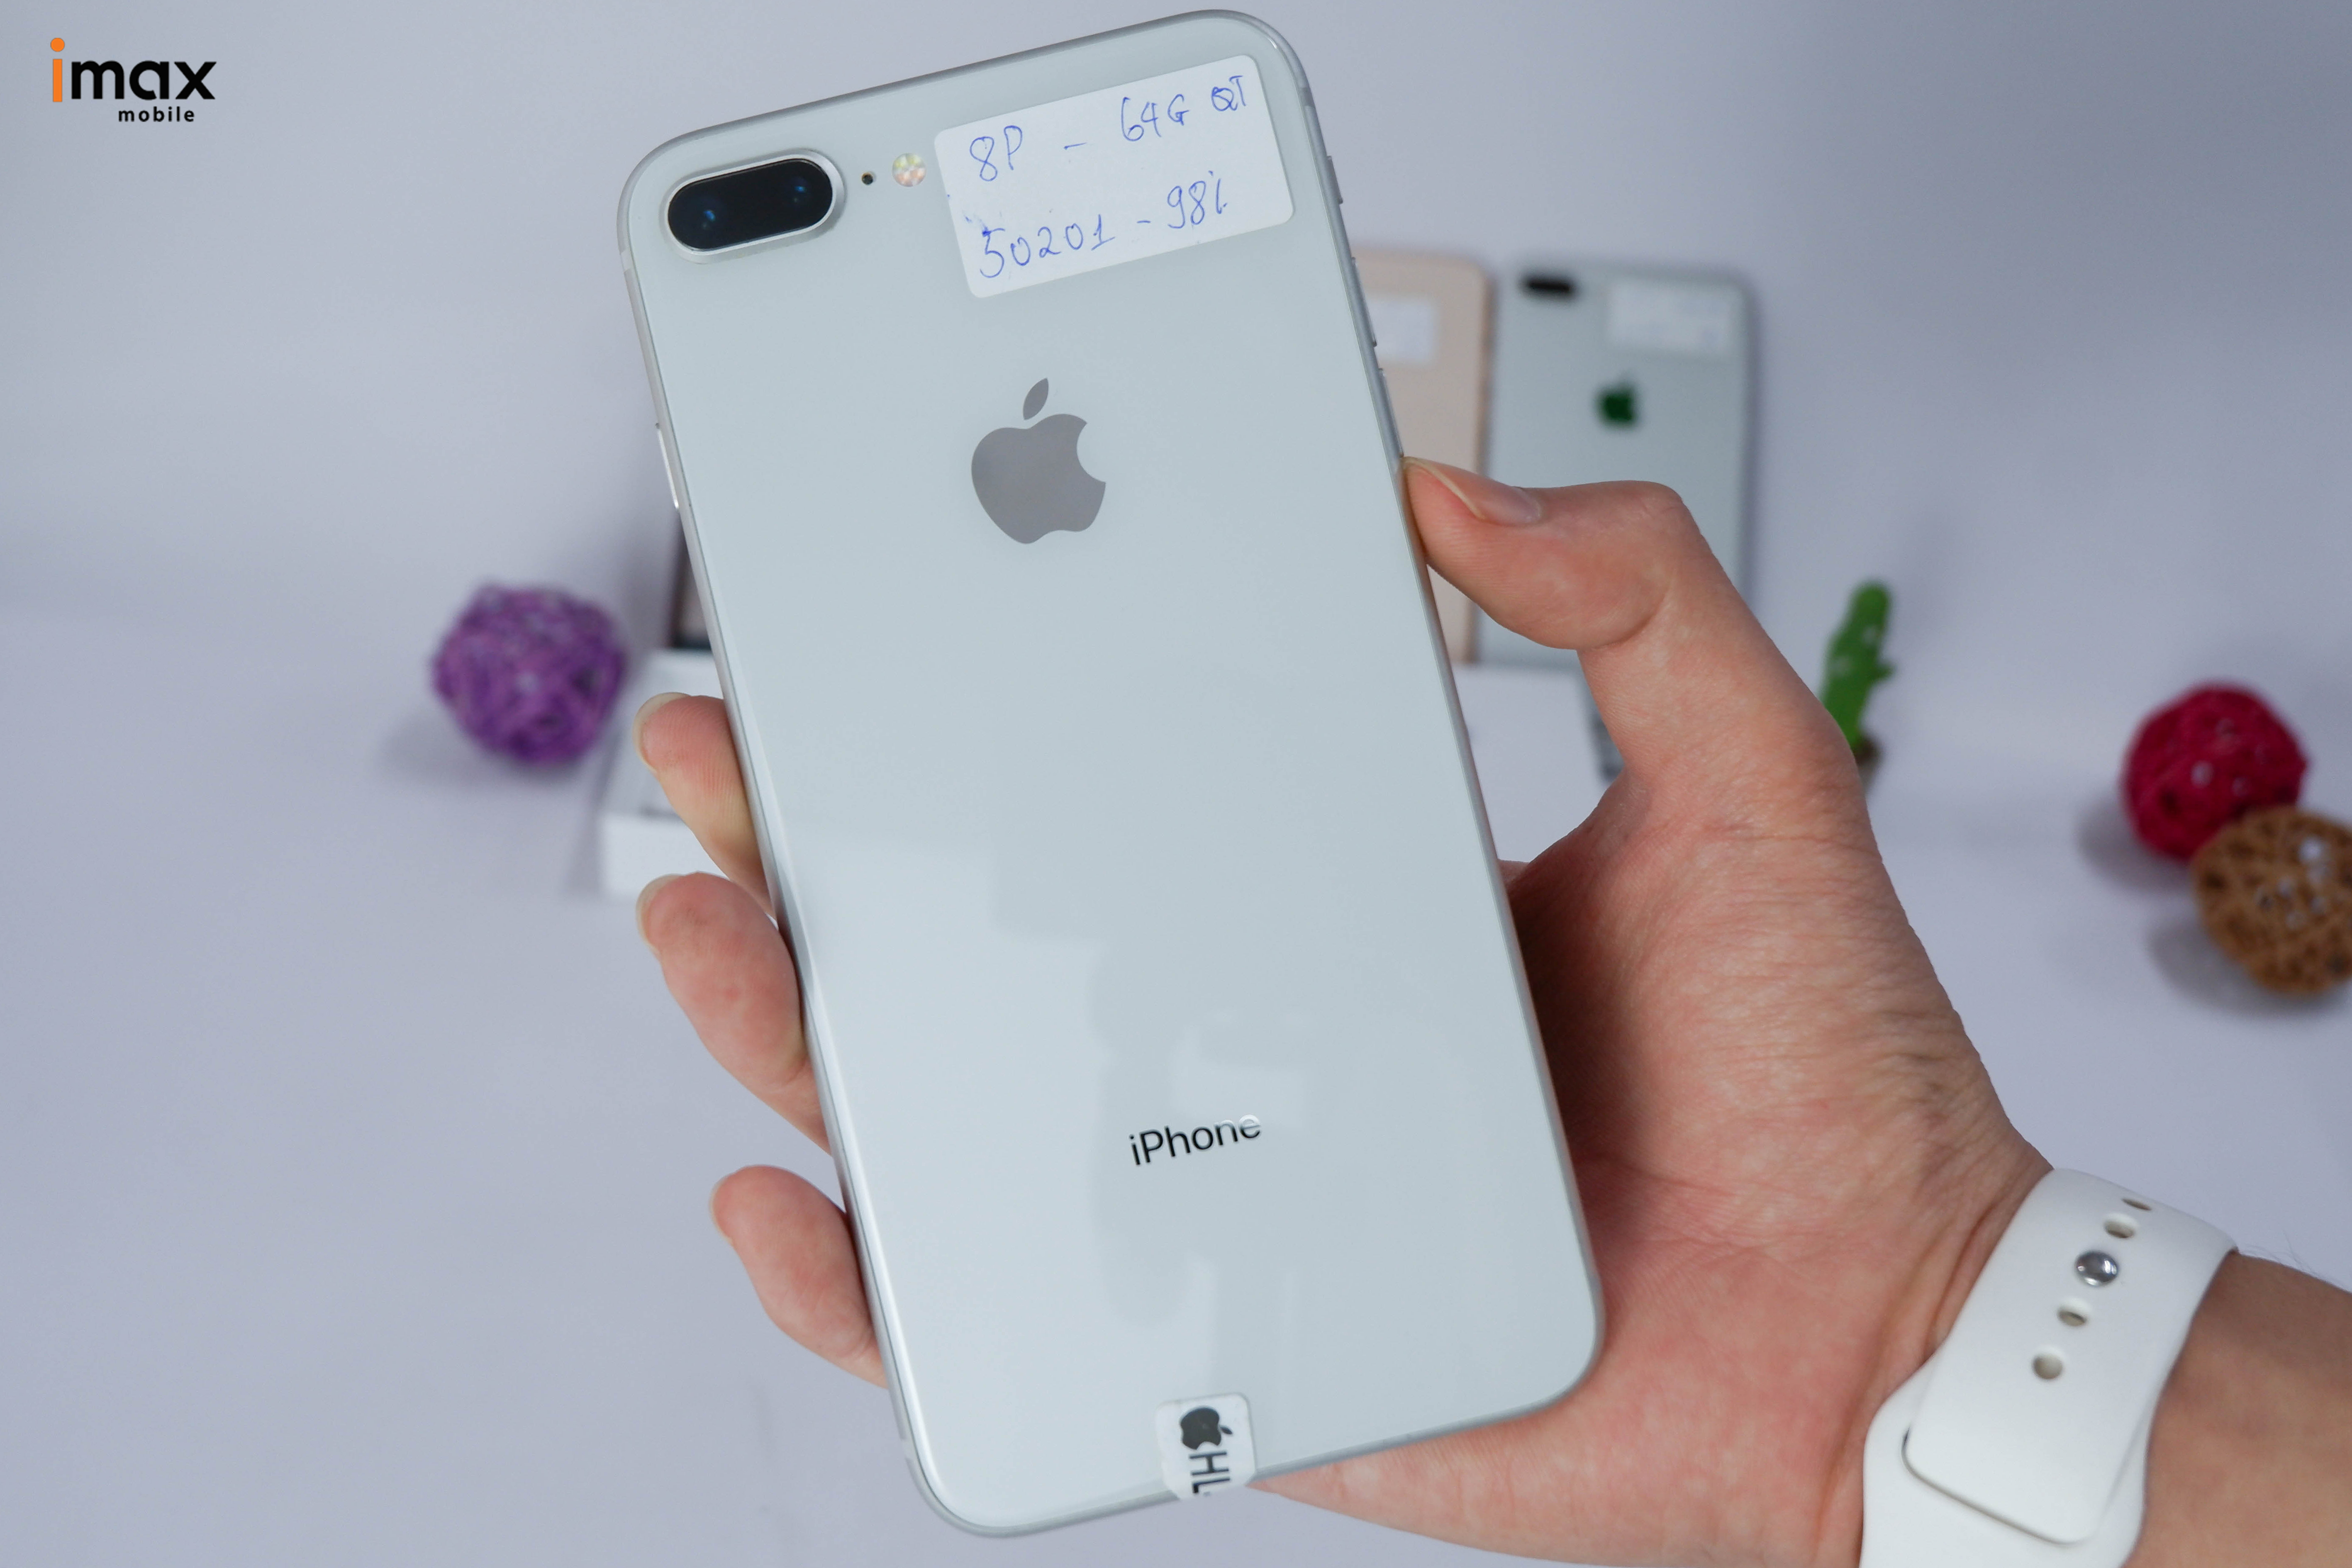 Mua iPhone 8 Plus Lock rẻ nhất HN: Tại Hà Nội, nhiều cửa hàng đang bán iPhone 8 Plus Lock với giá rẻ hơn so với các cửa hàng khác. Nếu bạn muốn sở hữu một chiếc iPhone chất lượng với giá tốt, bạn có thể tham khảo một số cửa hàng uy tín trên địa bàn. Hãy nhanh tay sở hữu một chiếc iPhone 8 Plus Lock và khám phá những tính năng tuyệt vời của nó!